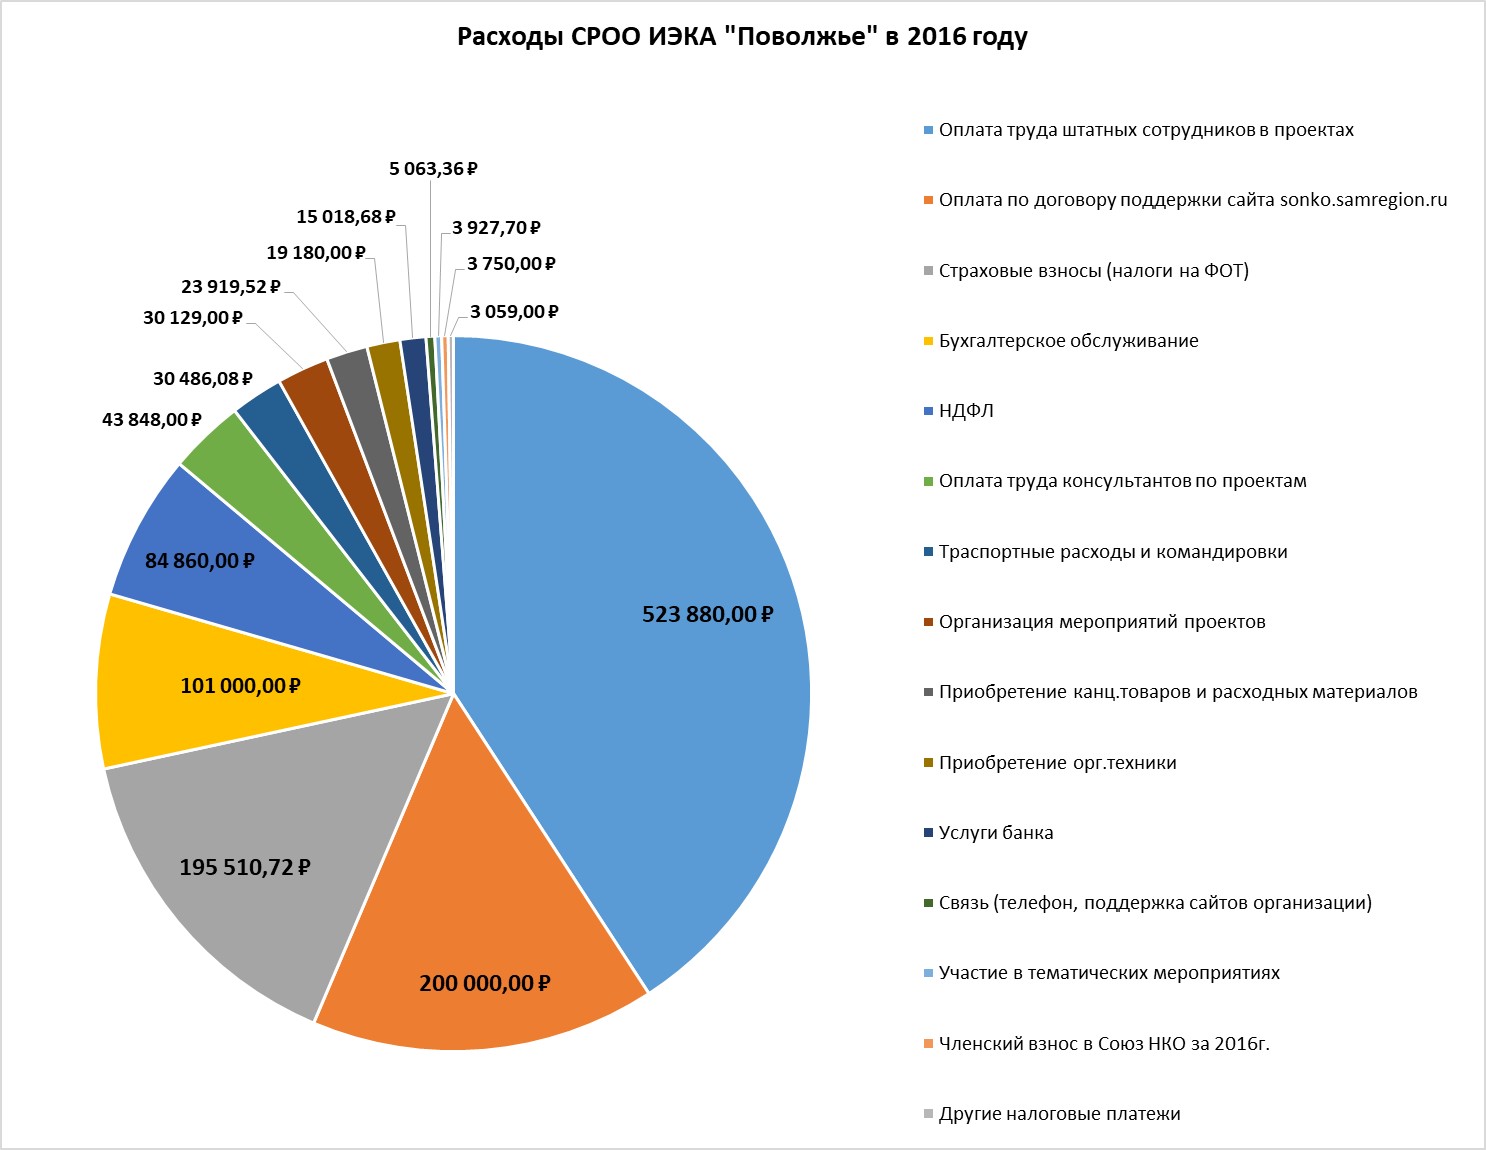 Структура и объем расходов СРОО ИЭКА "Поволжье" в 2016 году.